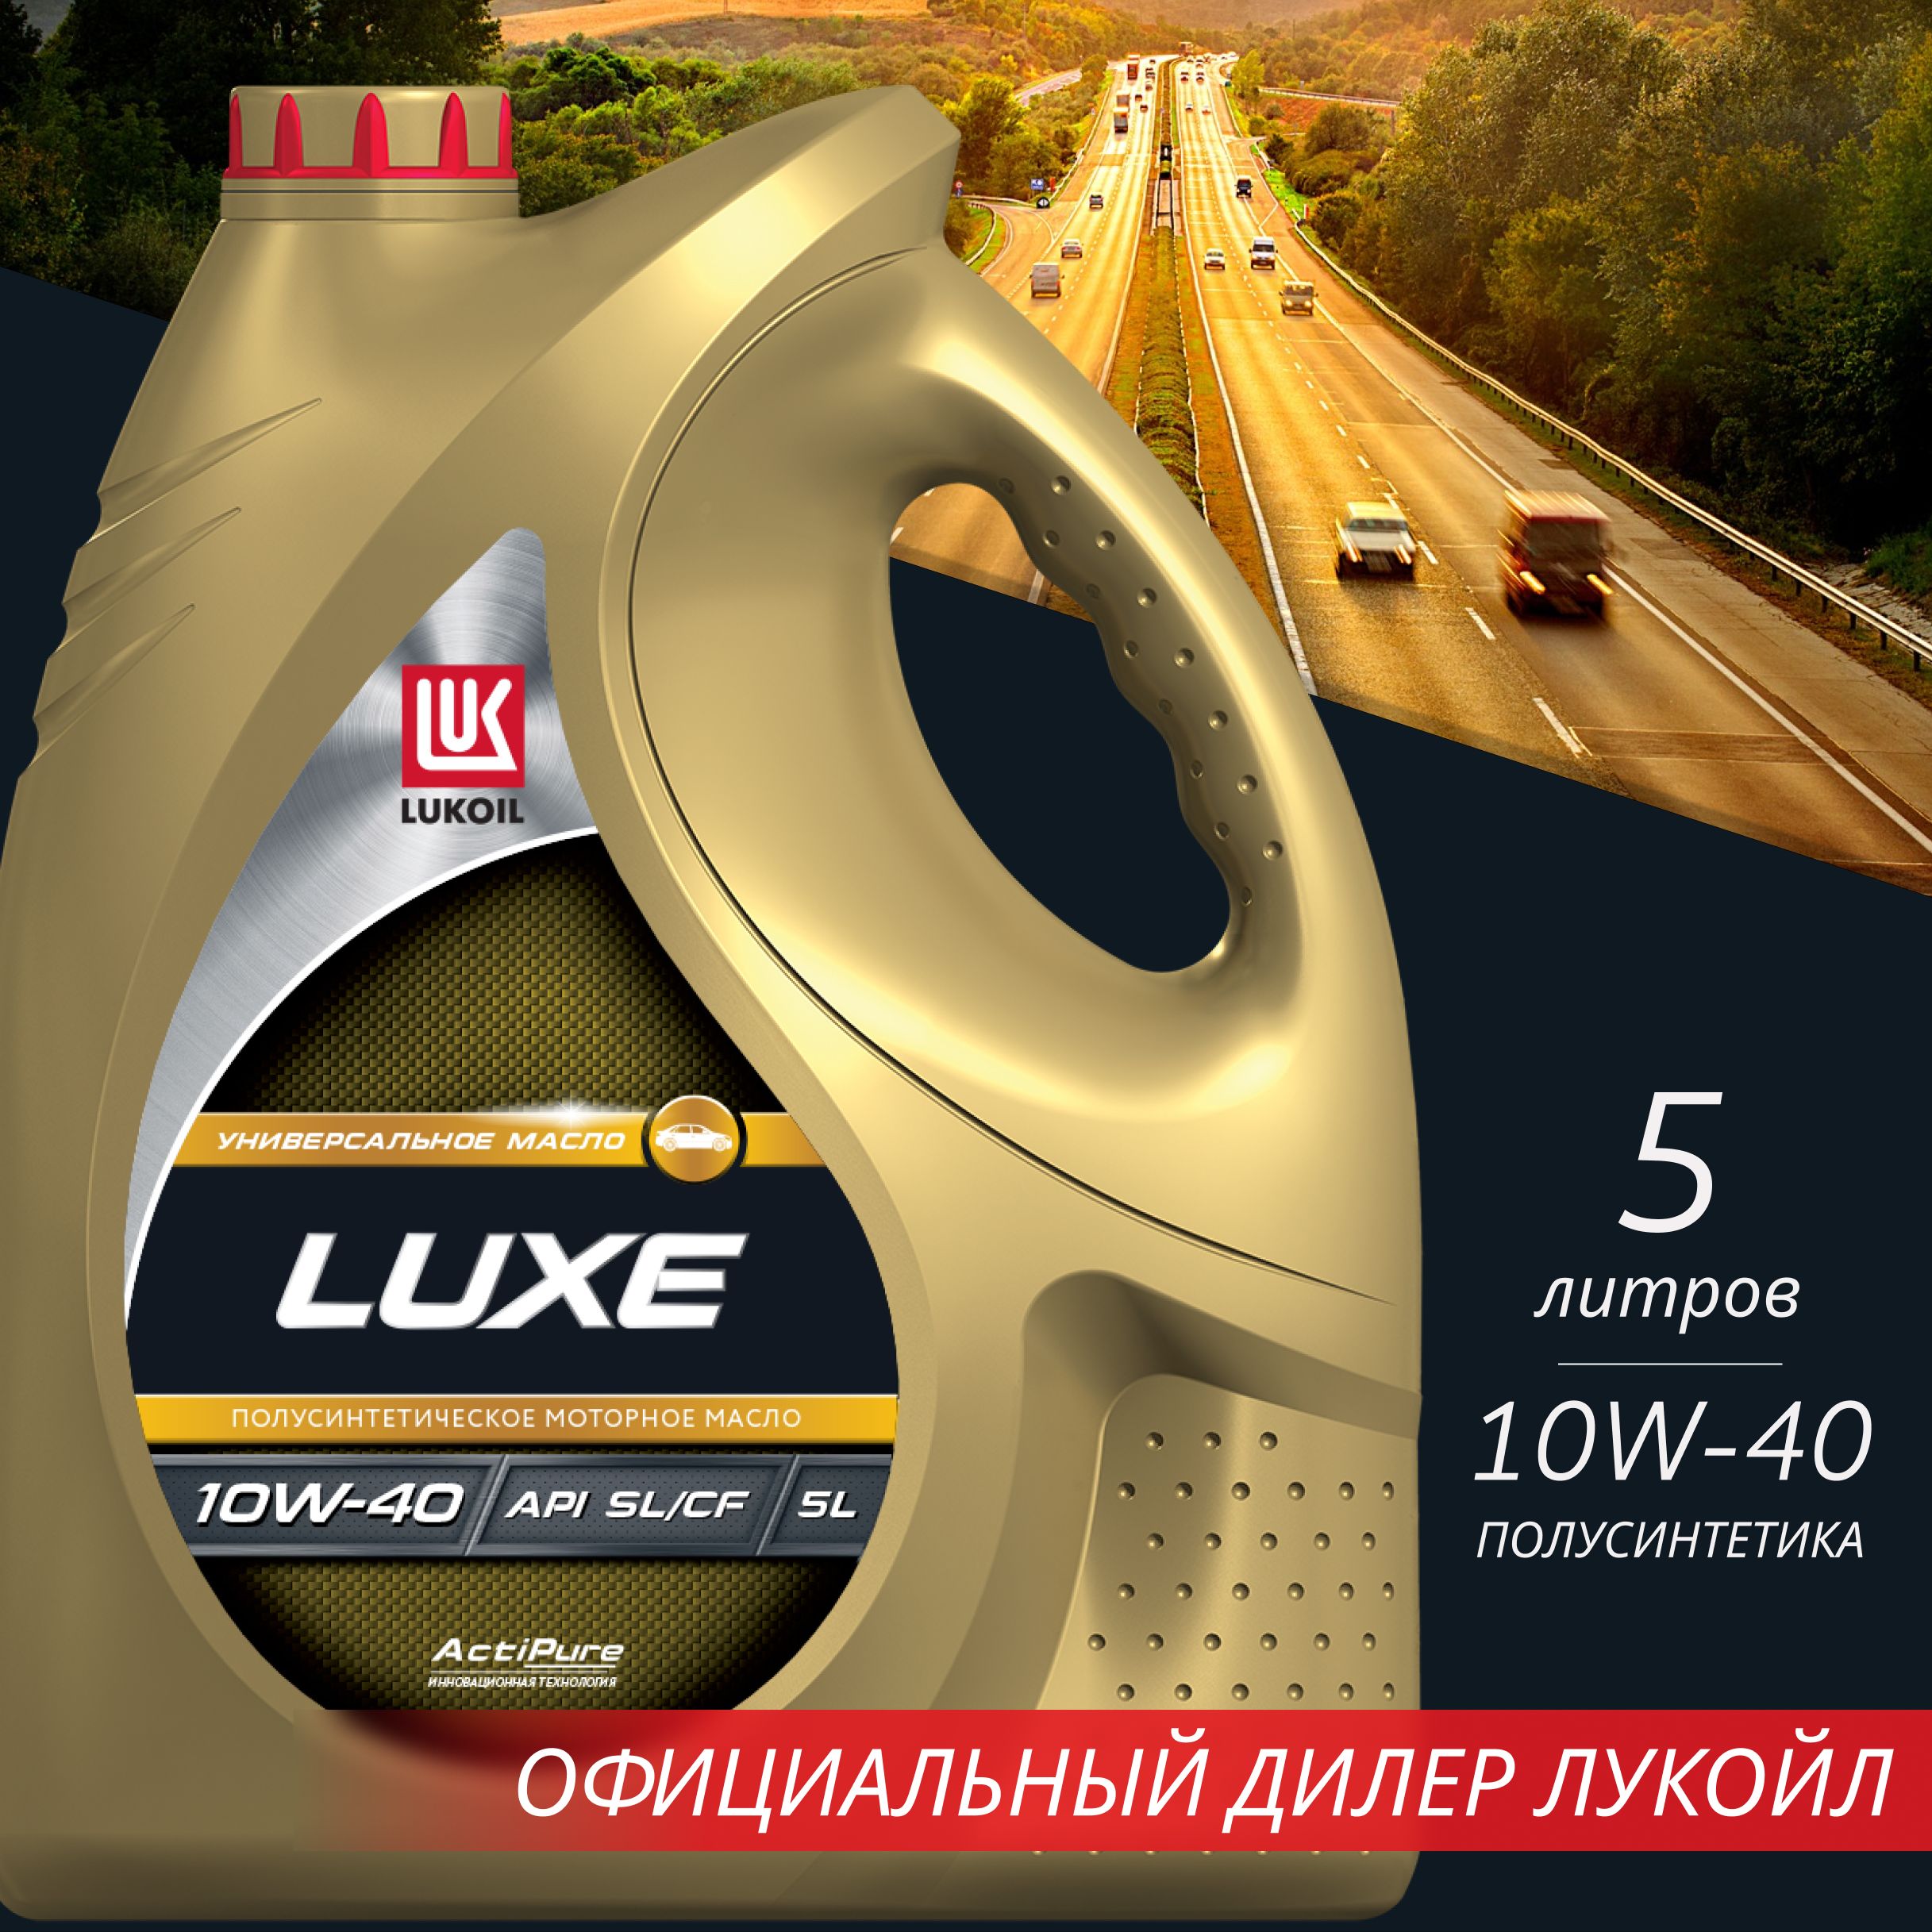 Лукойл люкс 10w 40 полусинтетика отзывы. Масло Luxe реклама. Масло Luxe 10w 40 полусинтетика отзывы.